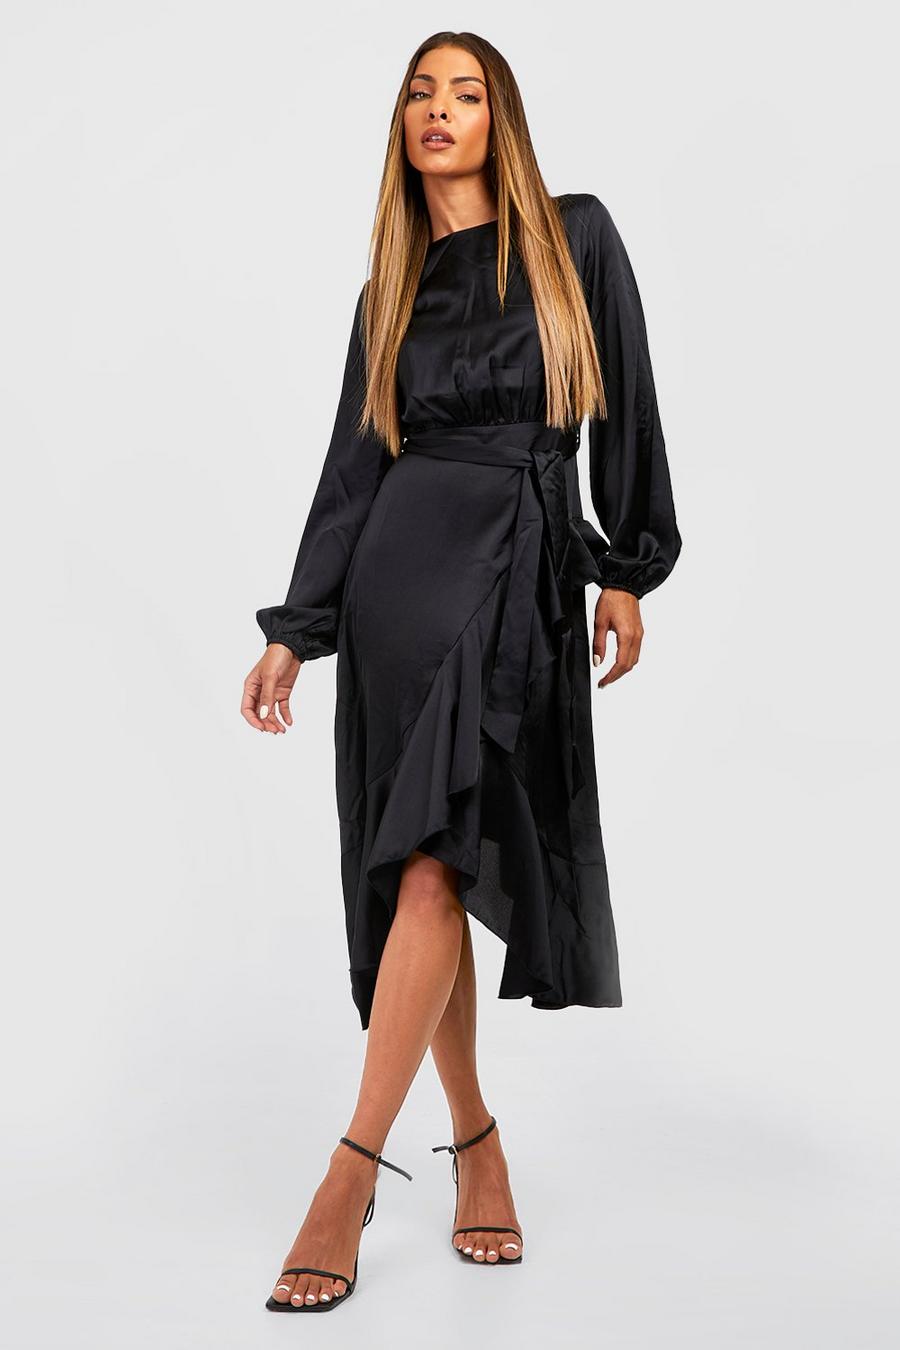 שחור black שמלת סאטן מידי עם מעטפת, שרוולים ארוכים וסלסול